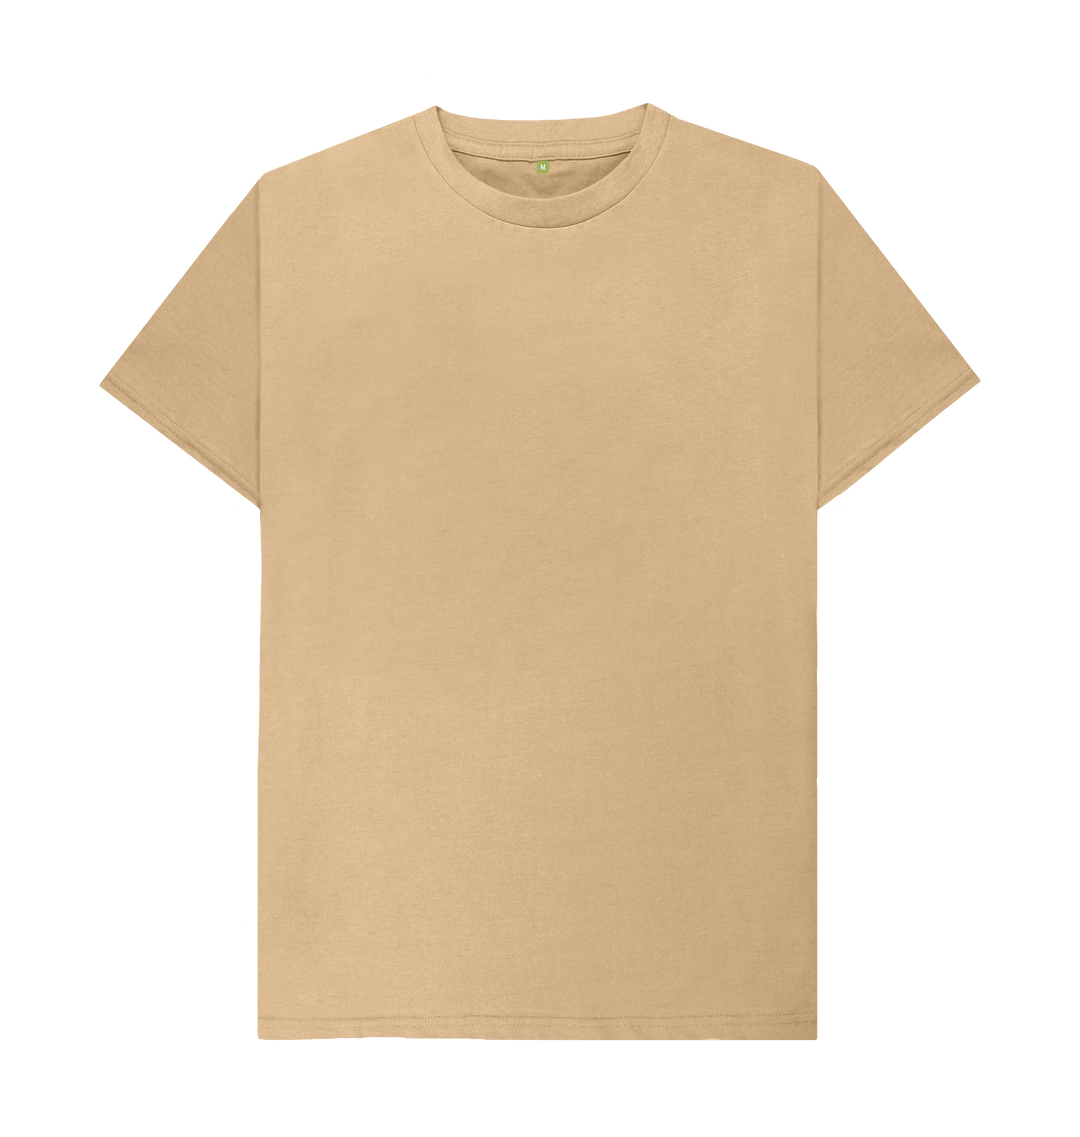 Historiker lade Picasso Plain T-Shirt